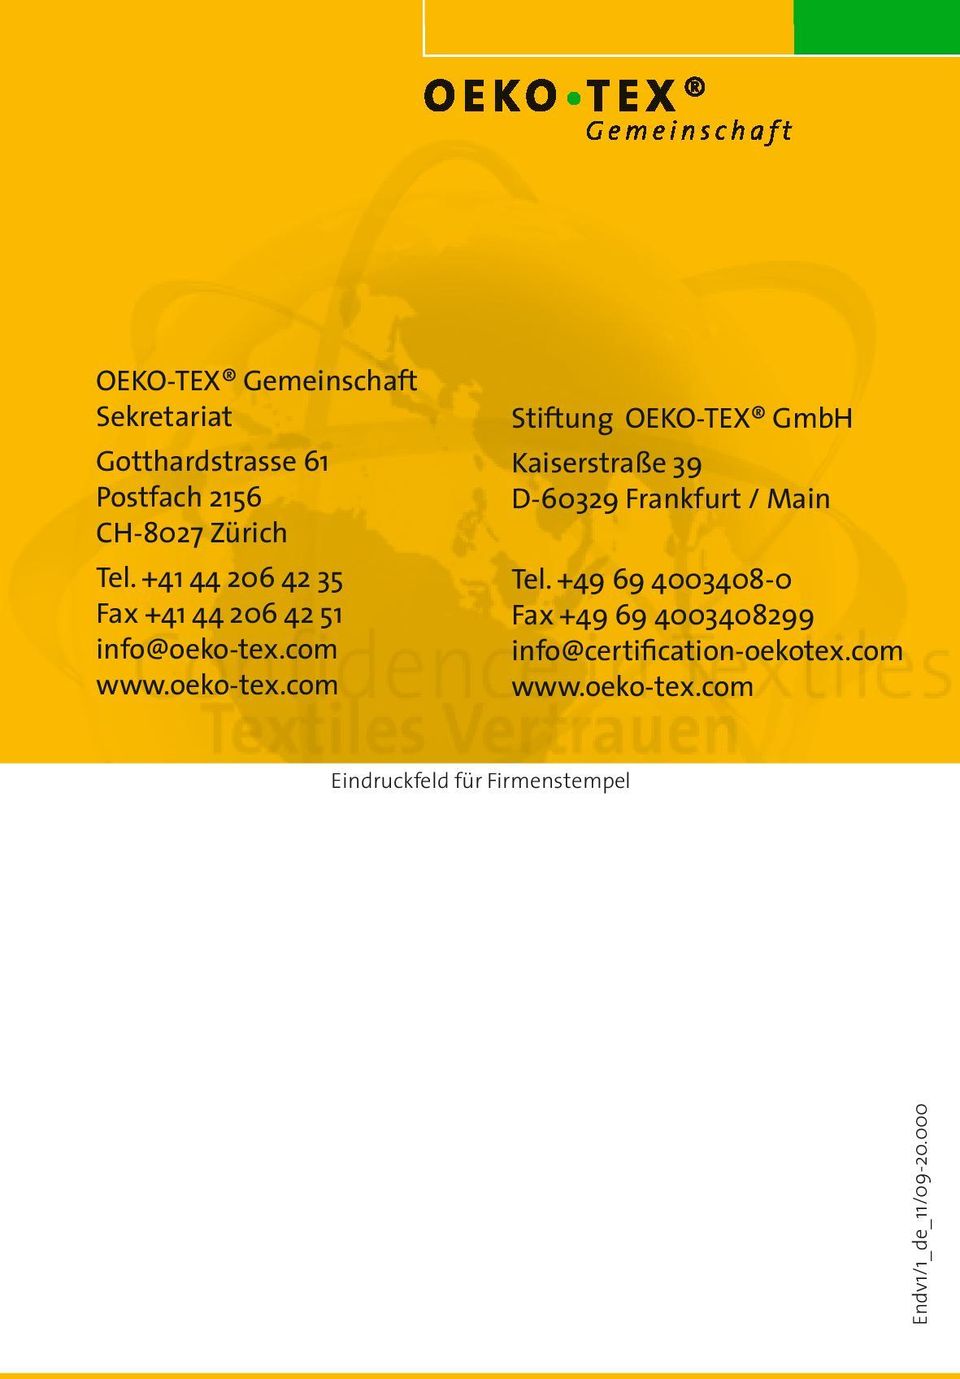 com www.oeko-tex.com Stiftung OEKO-TEX GmbH Kaiserstraße 39 D-60329 Frankfurt / Main Tel.